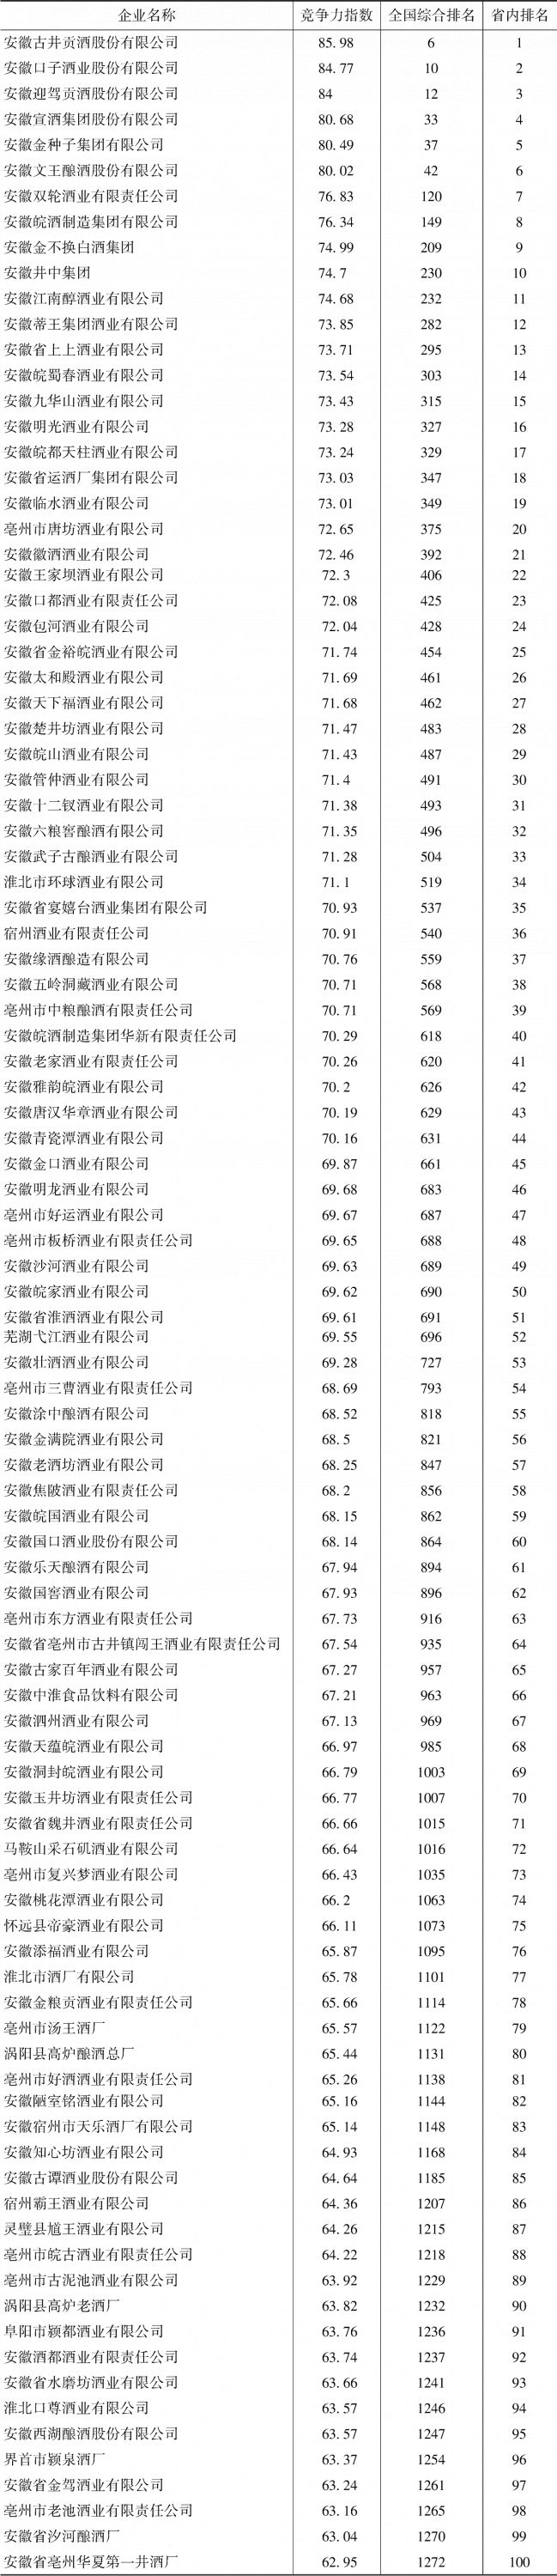 附表14-1 安徽省白酒企业竞争力排名前100名情况